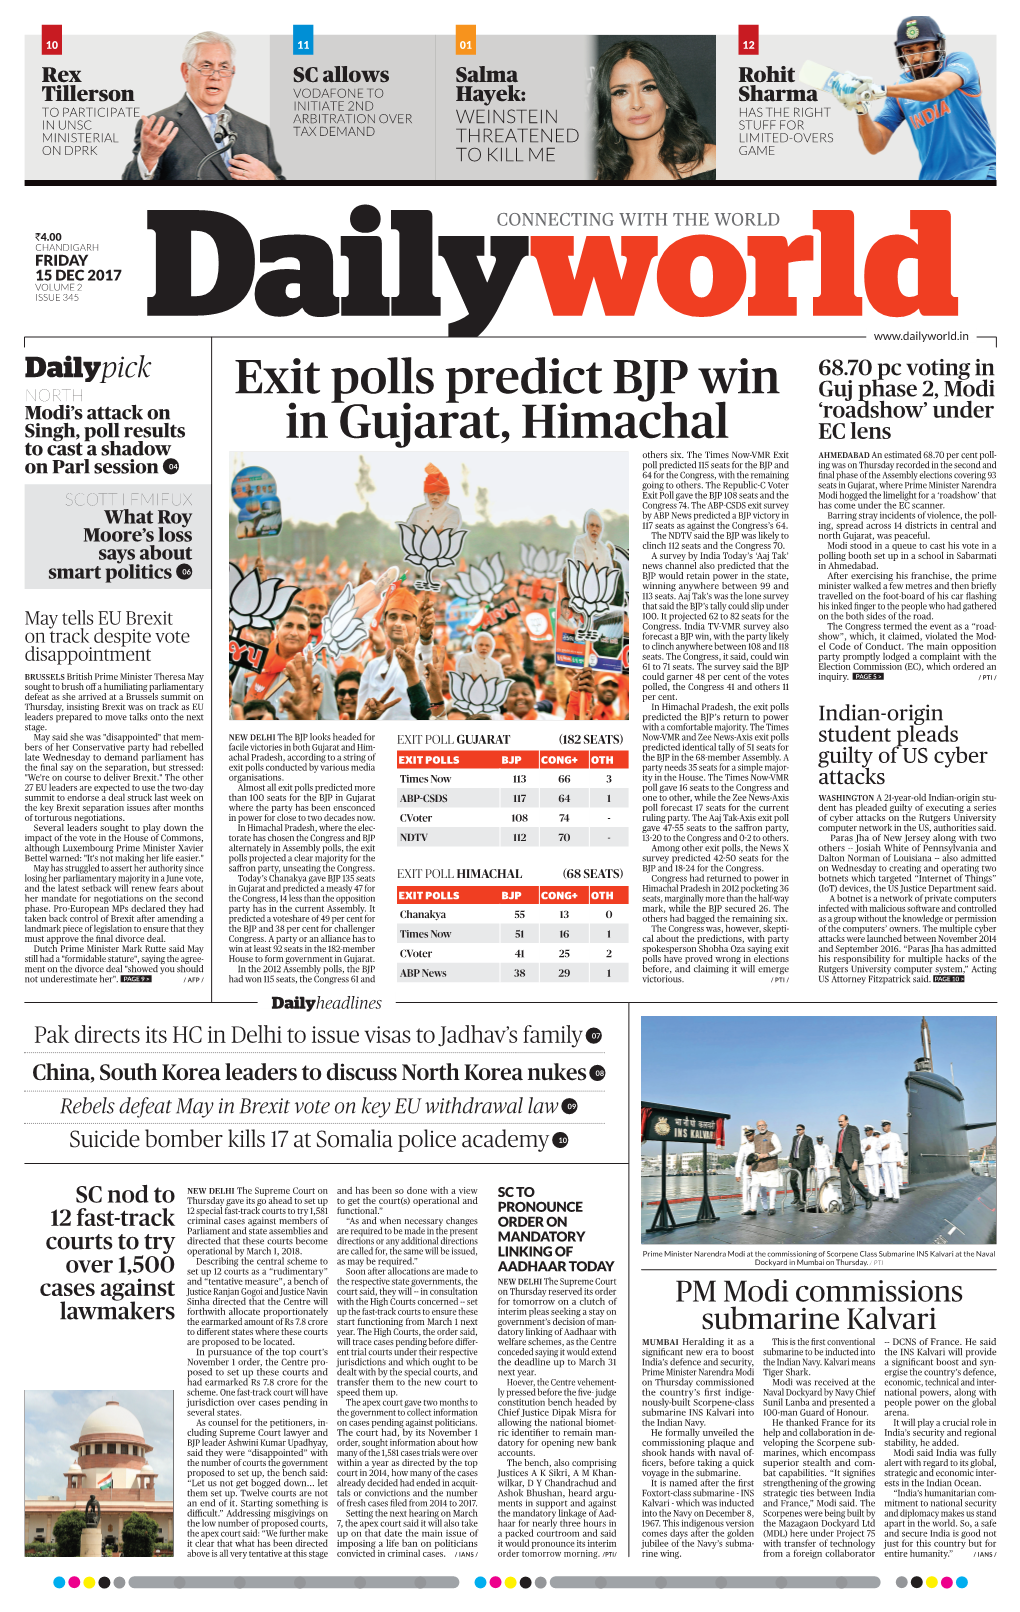 Exit Polls Predict BJP Win in Gujarat, Himachal